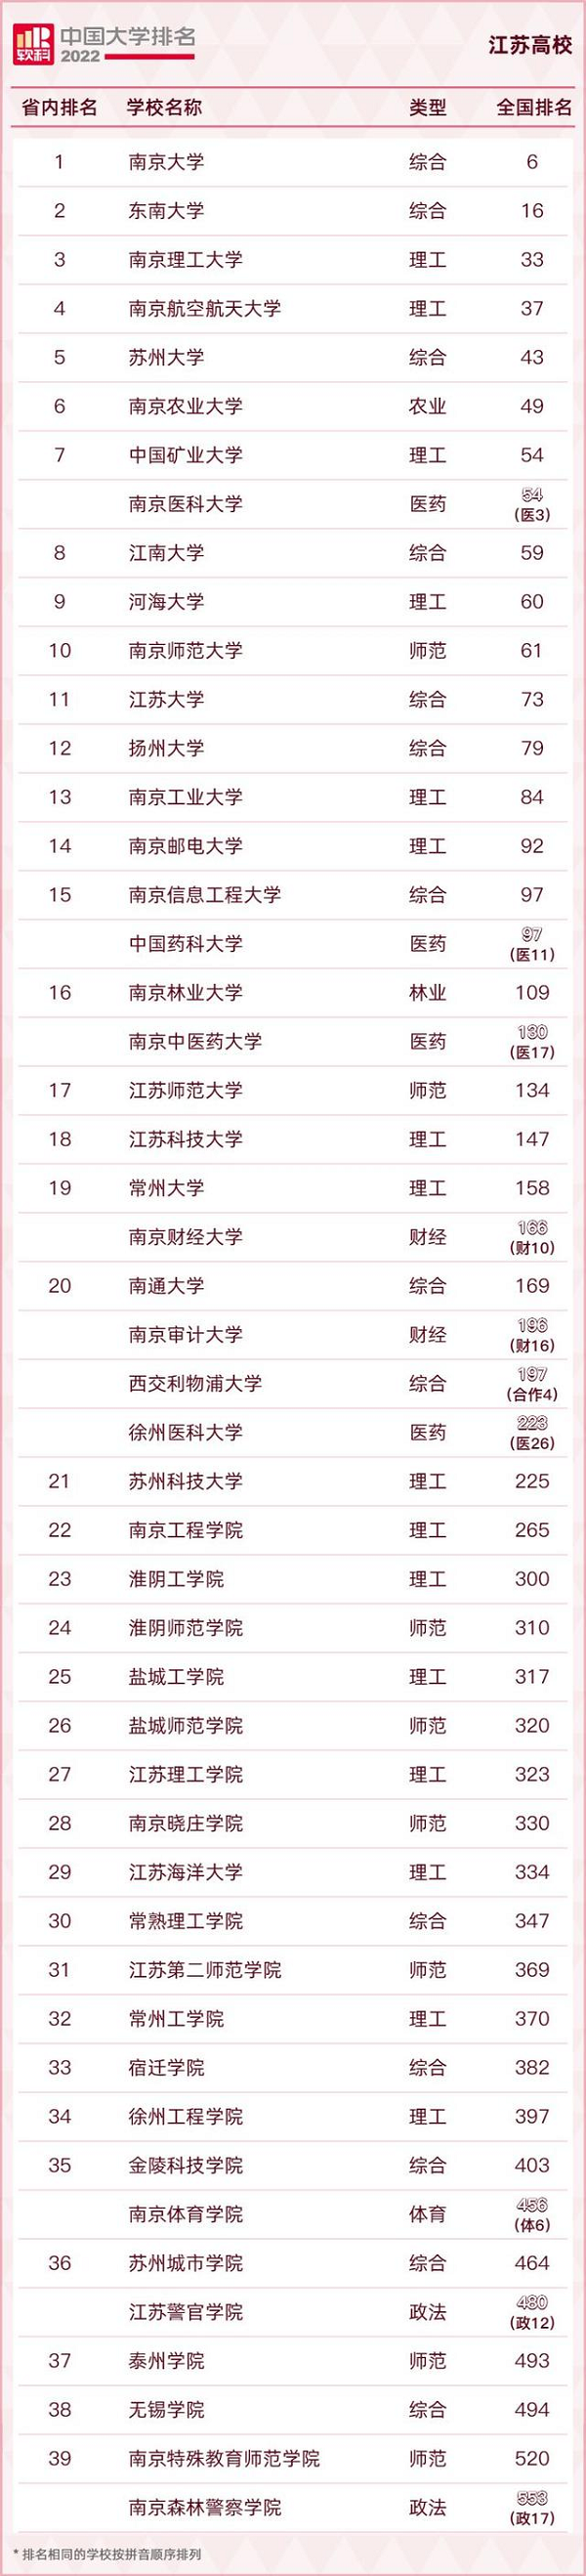 2022中国大学排名中江苏省有多少所高校